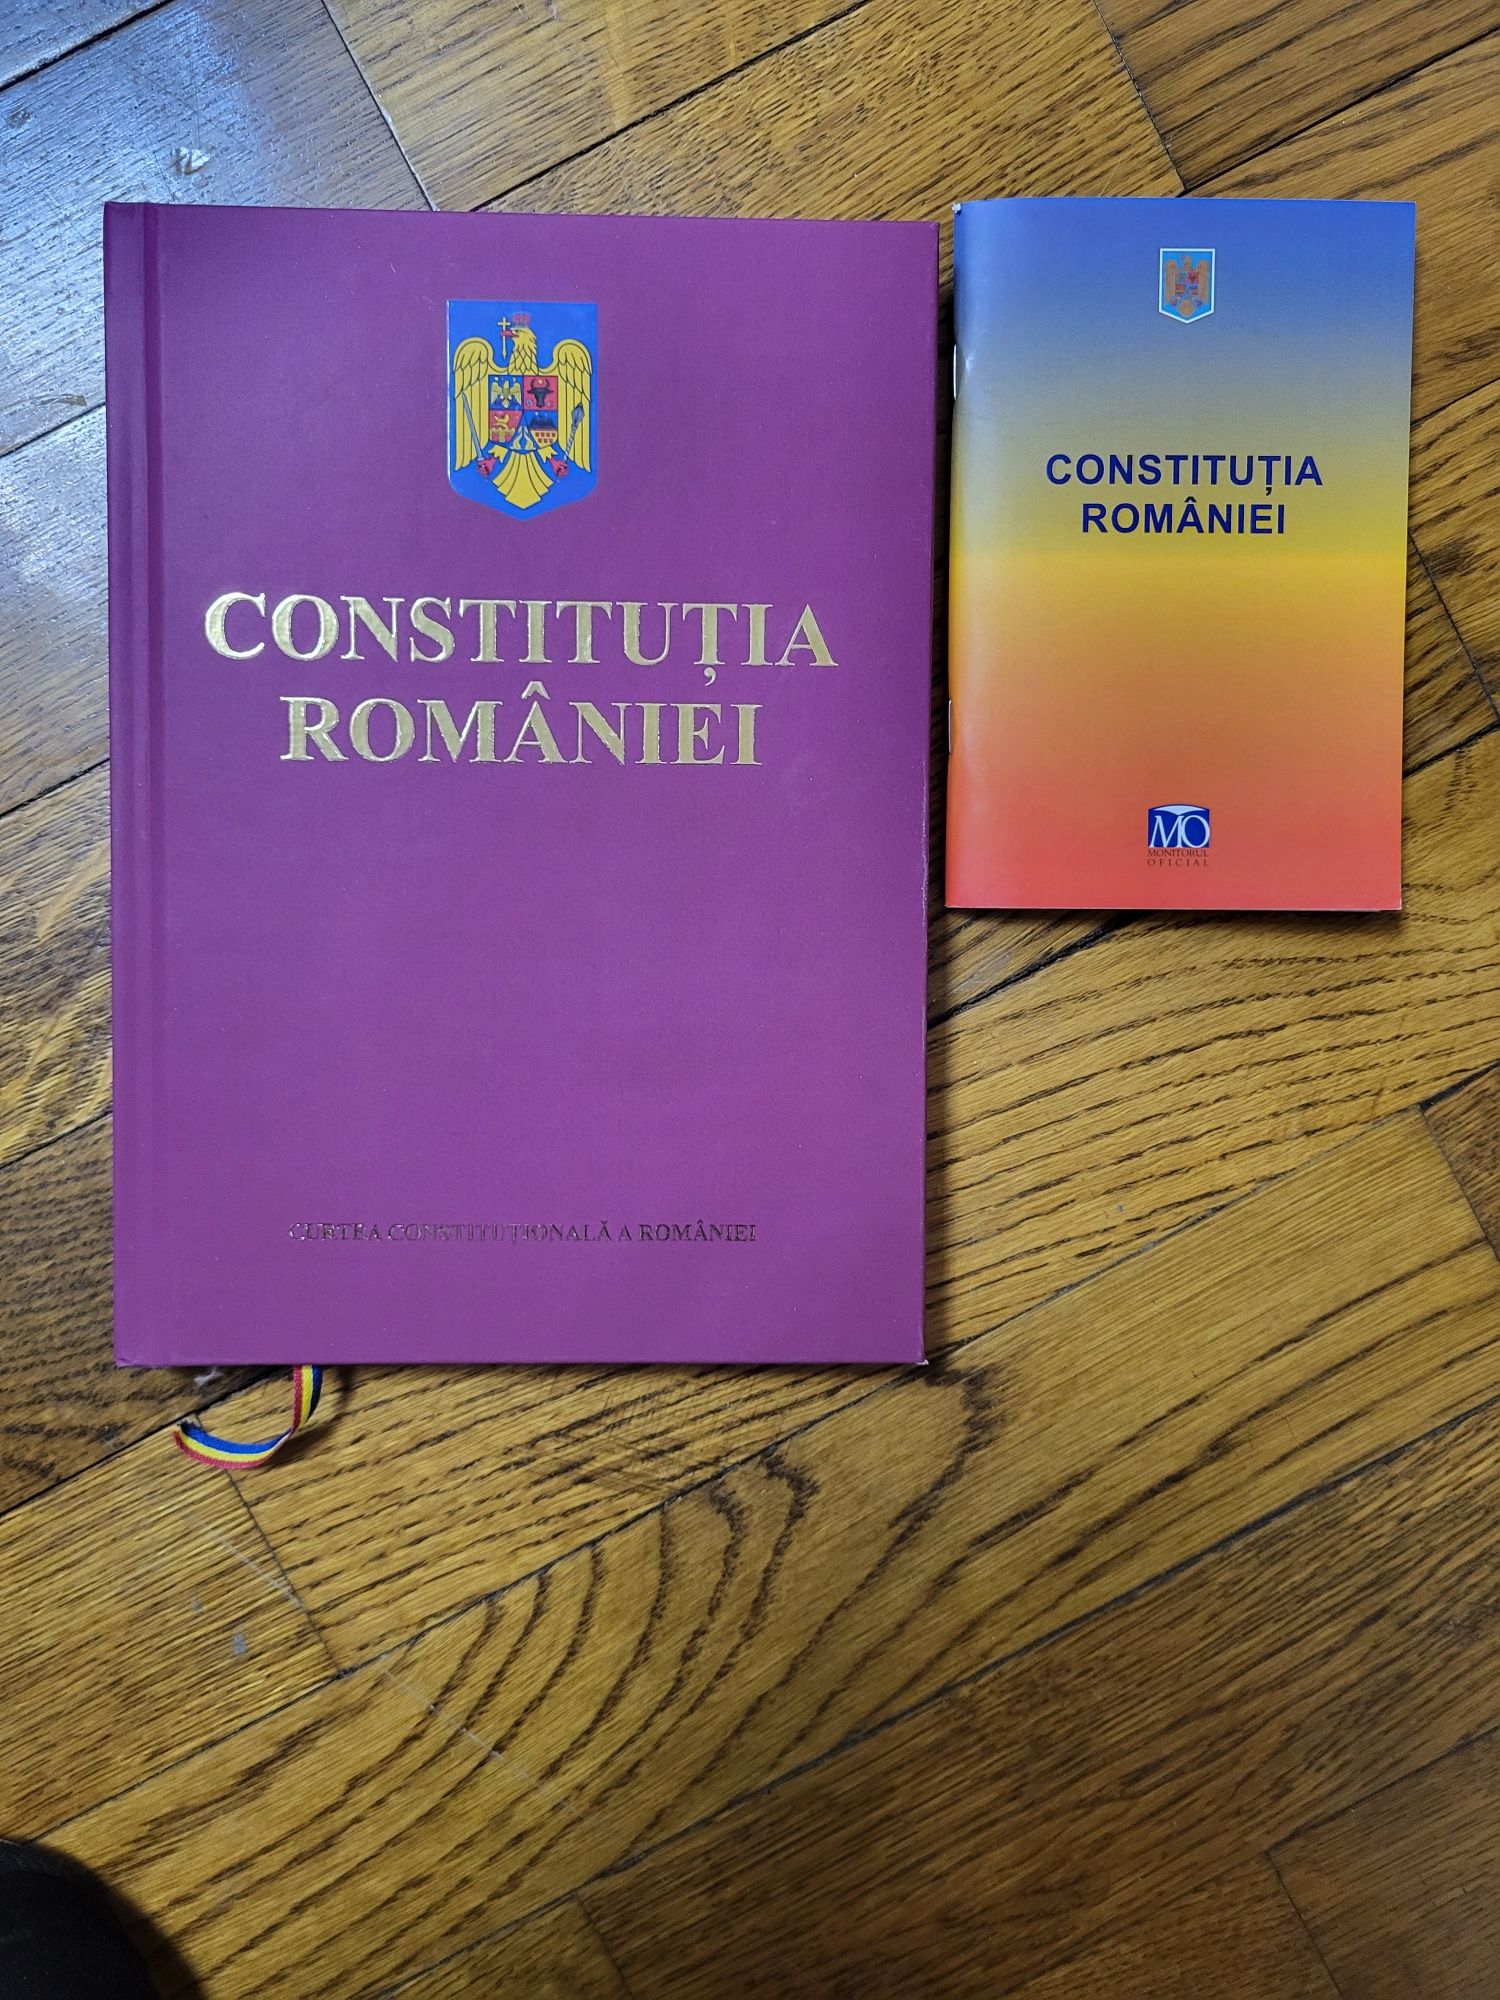 Vand pachet carti Constitutia Romaniei